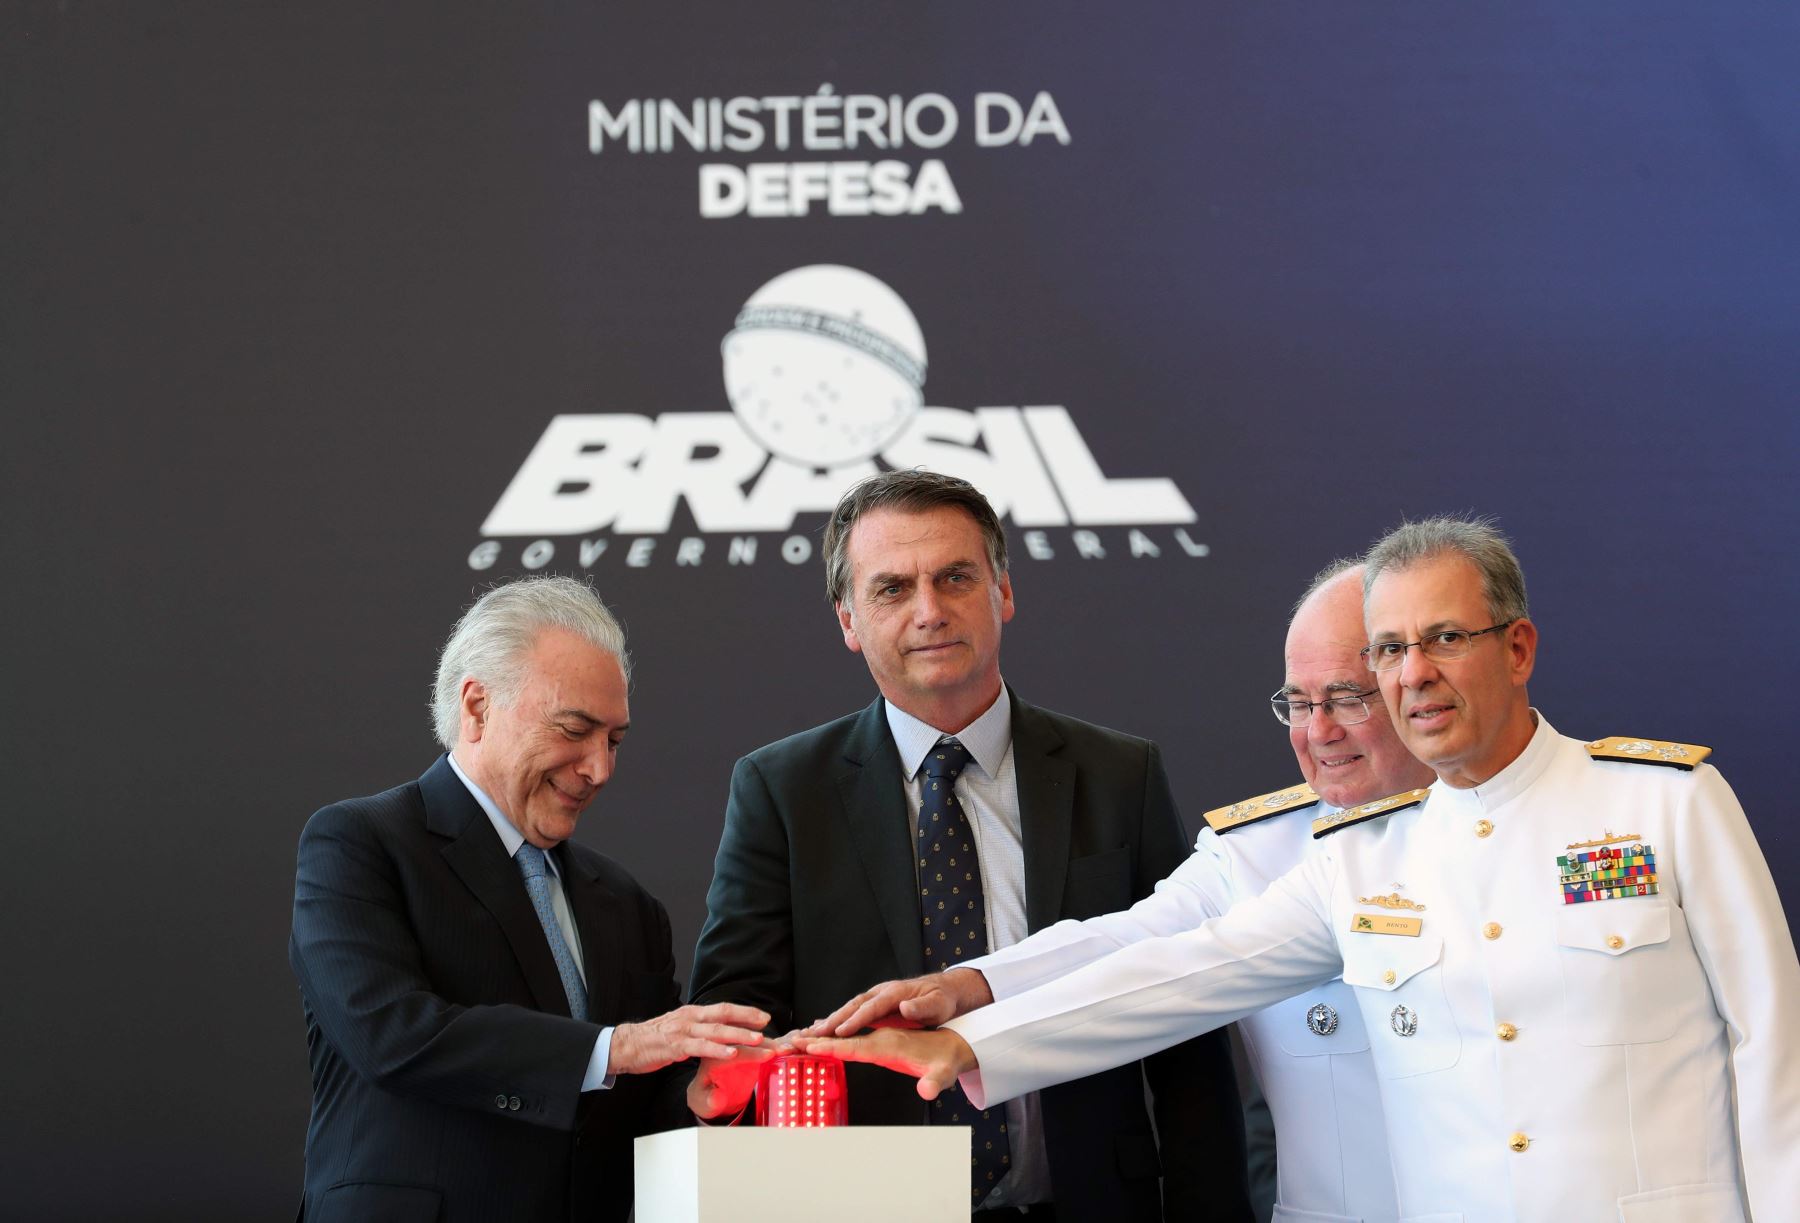 Brasil retiró invitaciones a Cuba y Venezuela para investidura de Bolsonaro